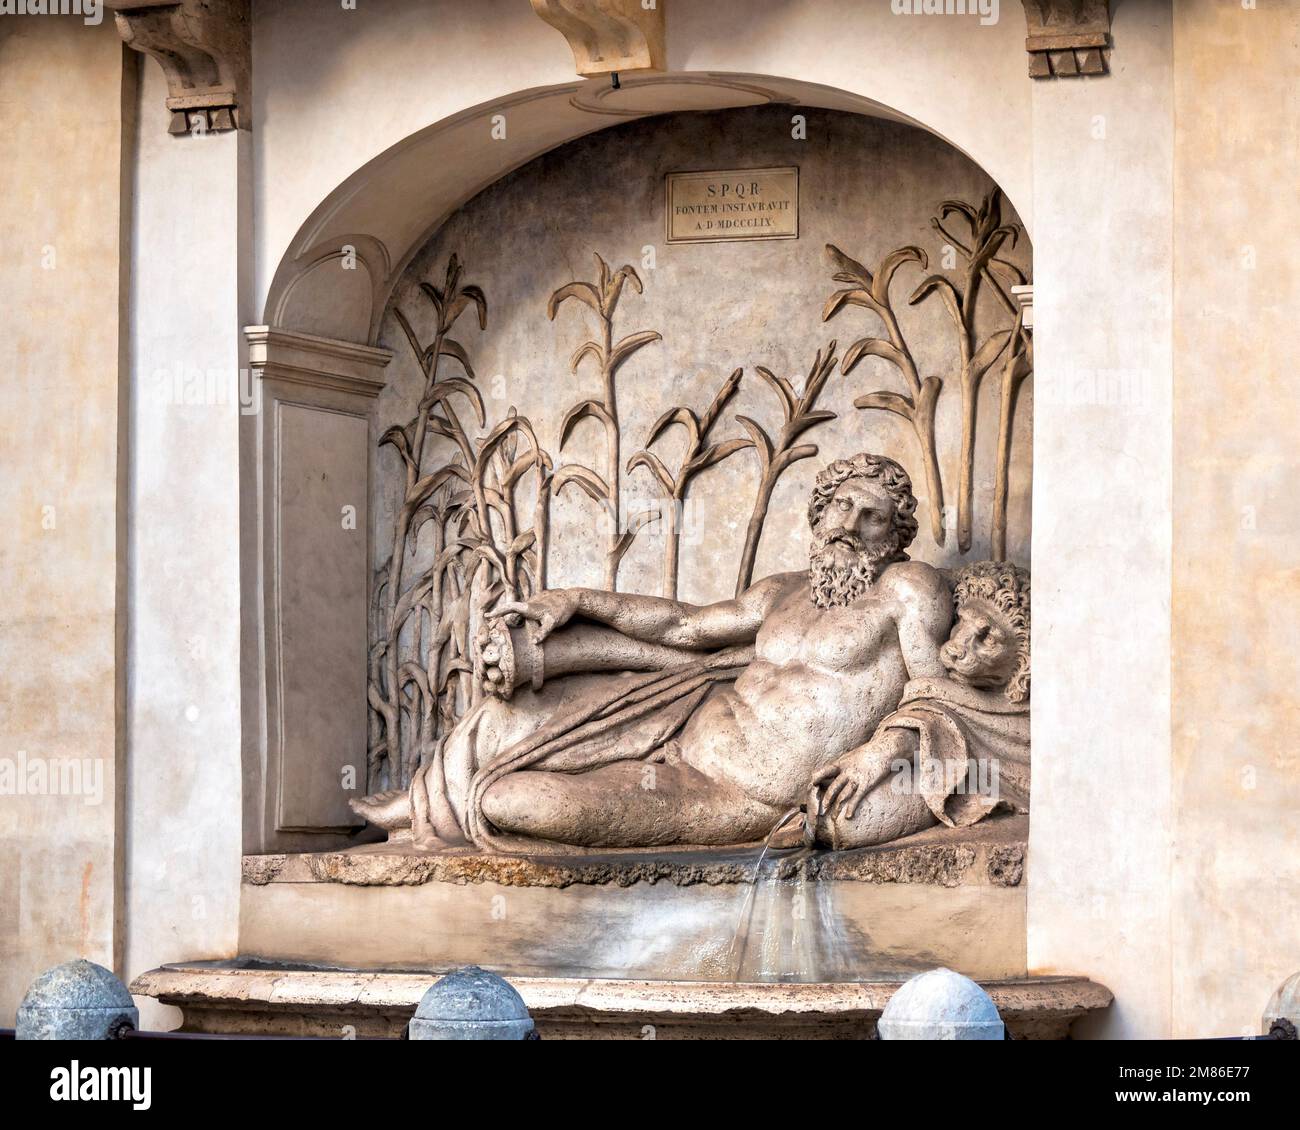 Statue of the river Aniene in Piazza delle Quattro Fontane, Rome, Italy Stock Photo